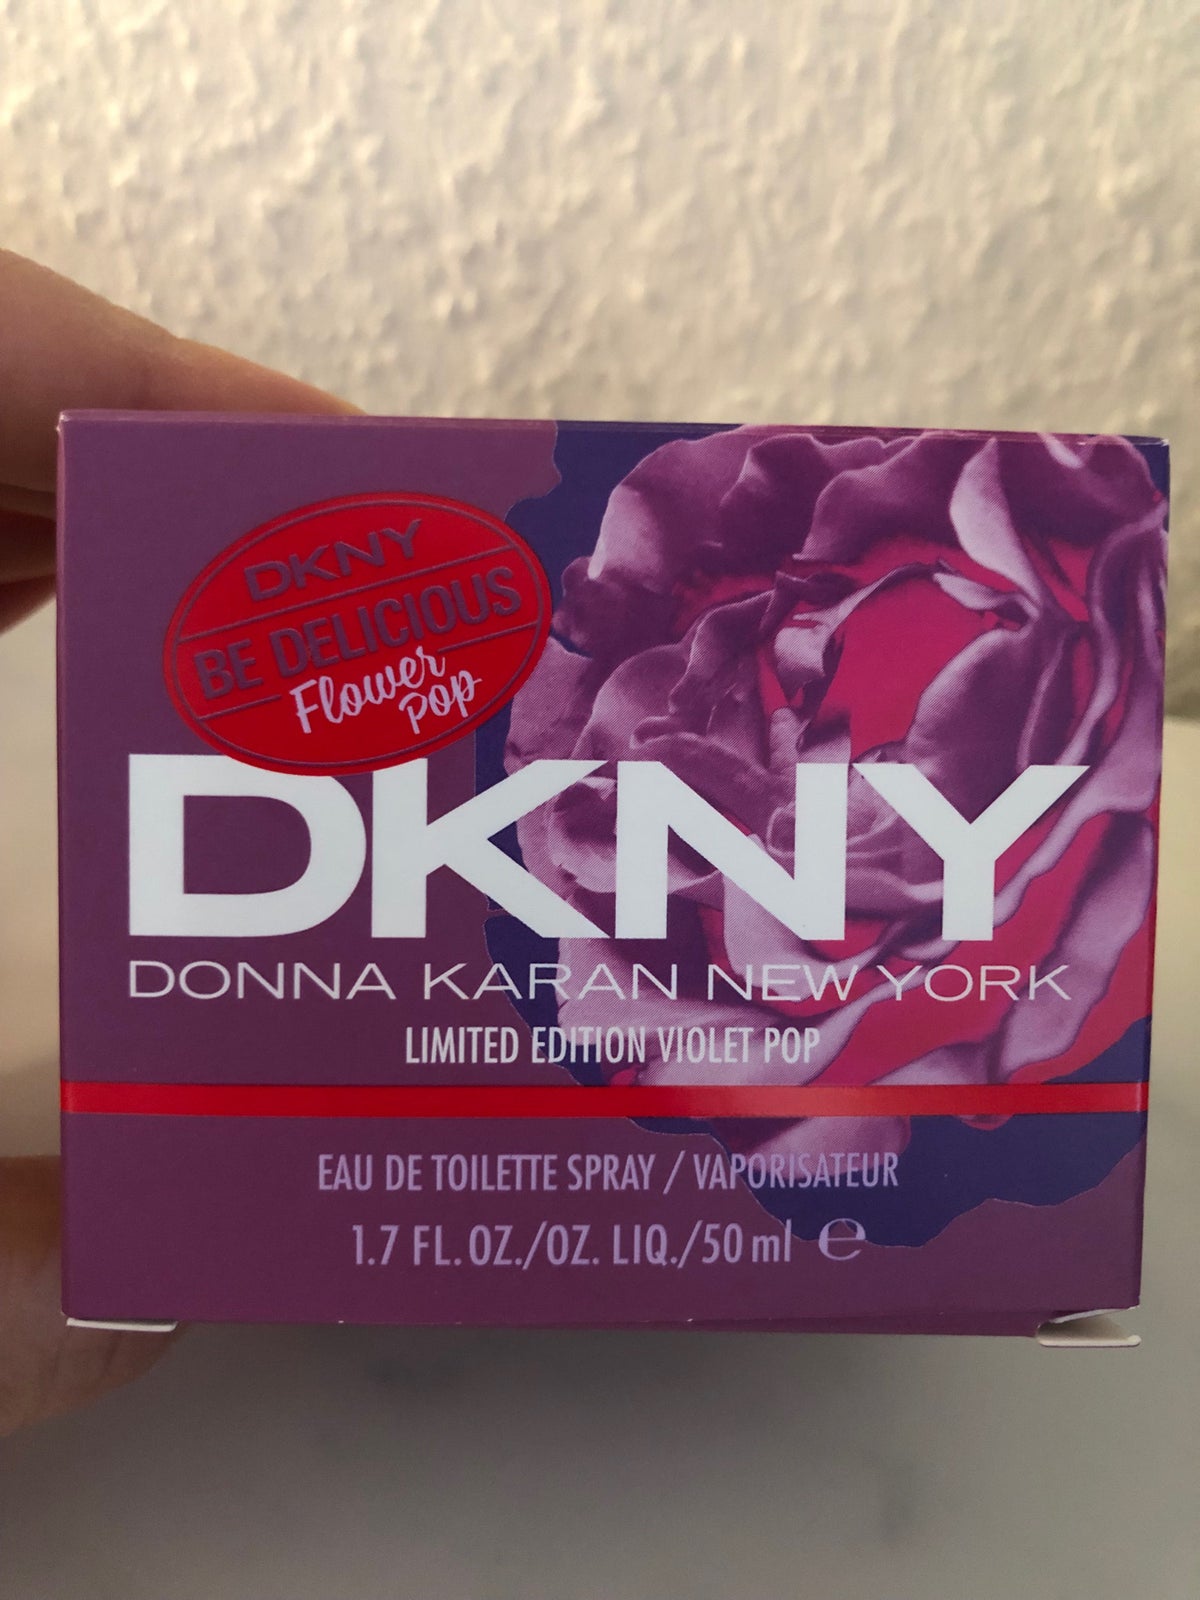 svamp Biskop Tomat Eau de Toilette, DKNY flower pop limited edition violet pop 50m ed, DKNY  Donna Karan – dba.dk – Køb og Salg af Nyt og Brugt